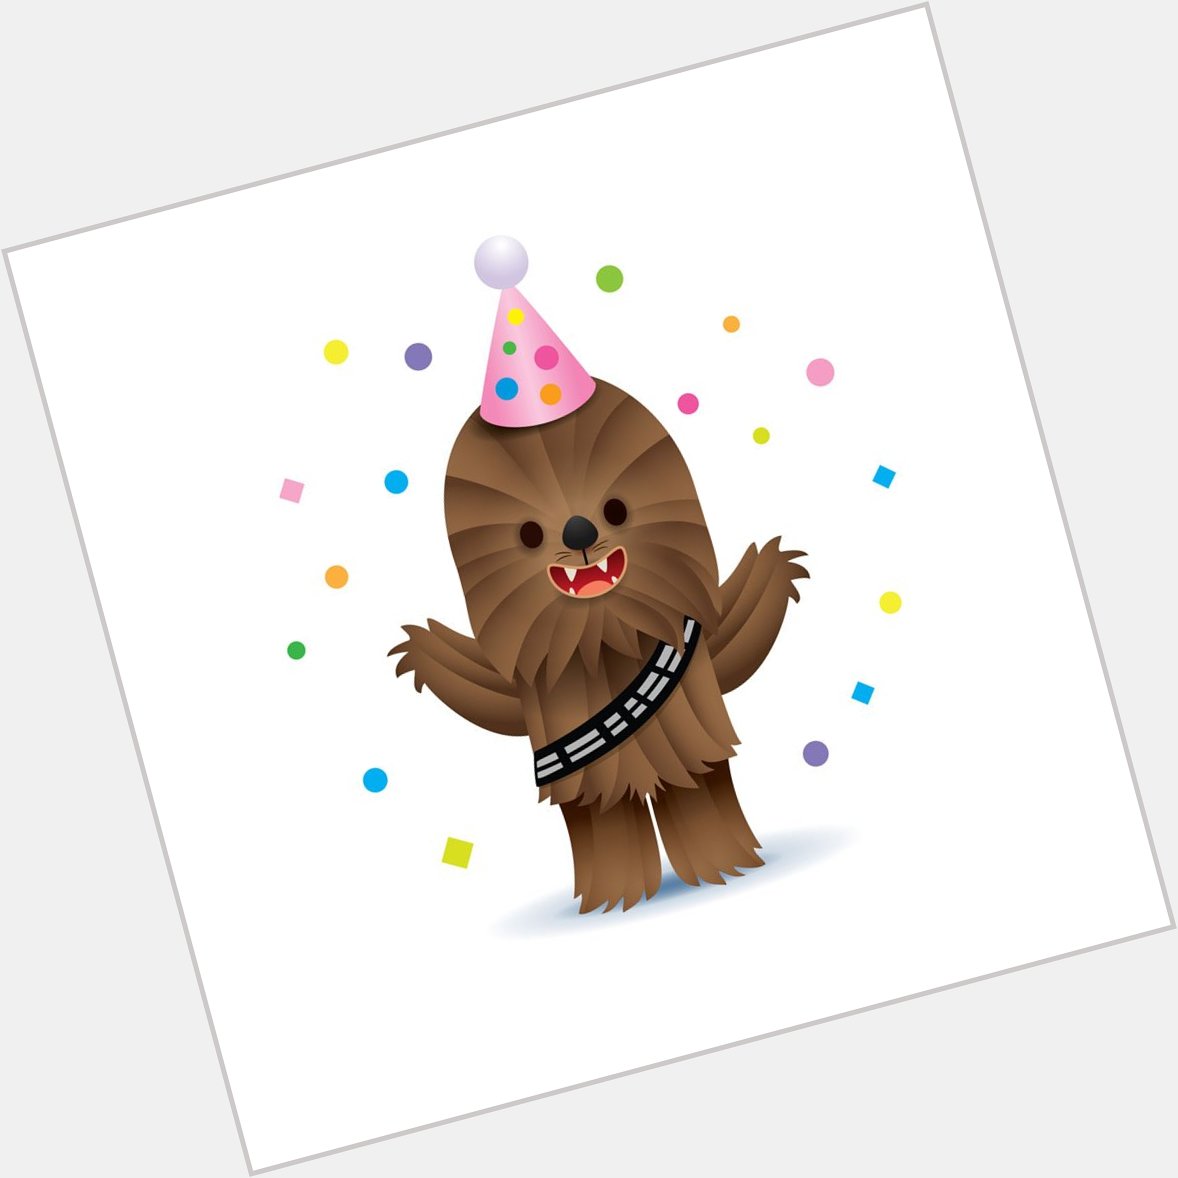 Wishing Peter Mayhew a very Happy Birthday! (Insert Wookiee roar here)  